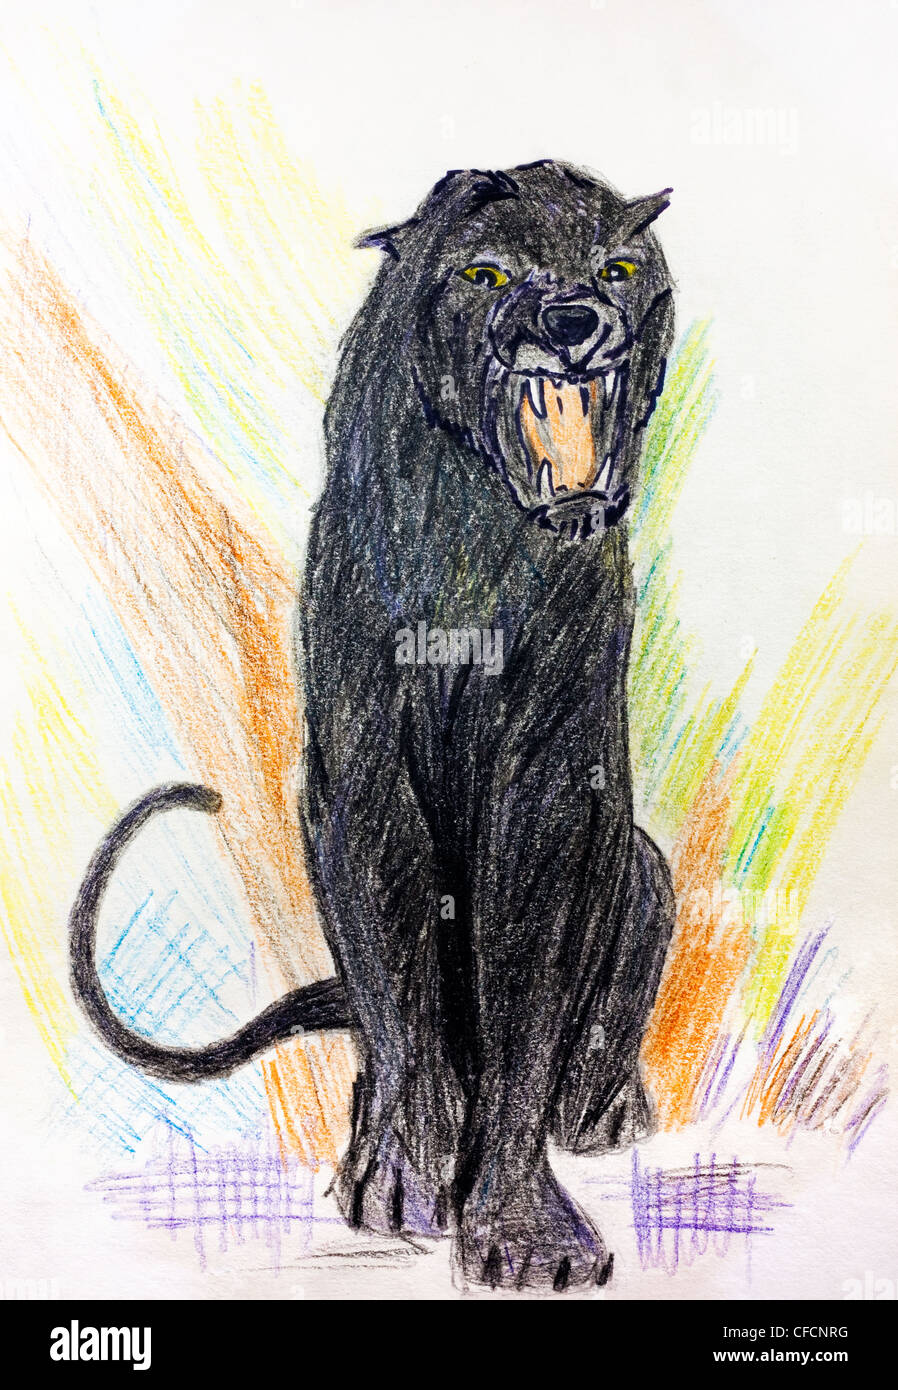 Pintura de un negro o pantera rugiendo Fotografía de stock Alamy